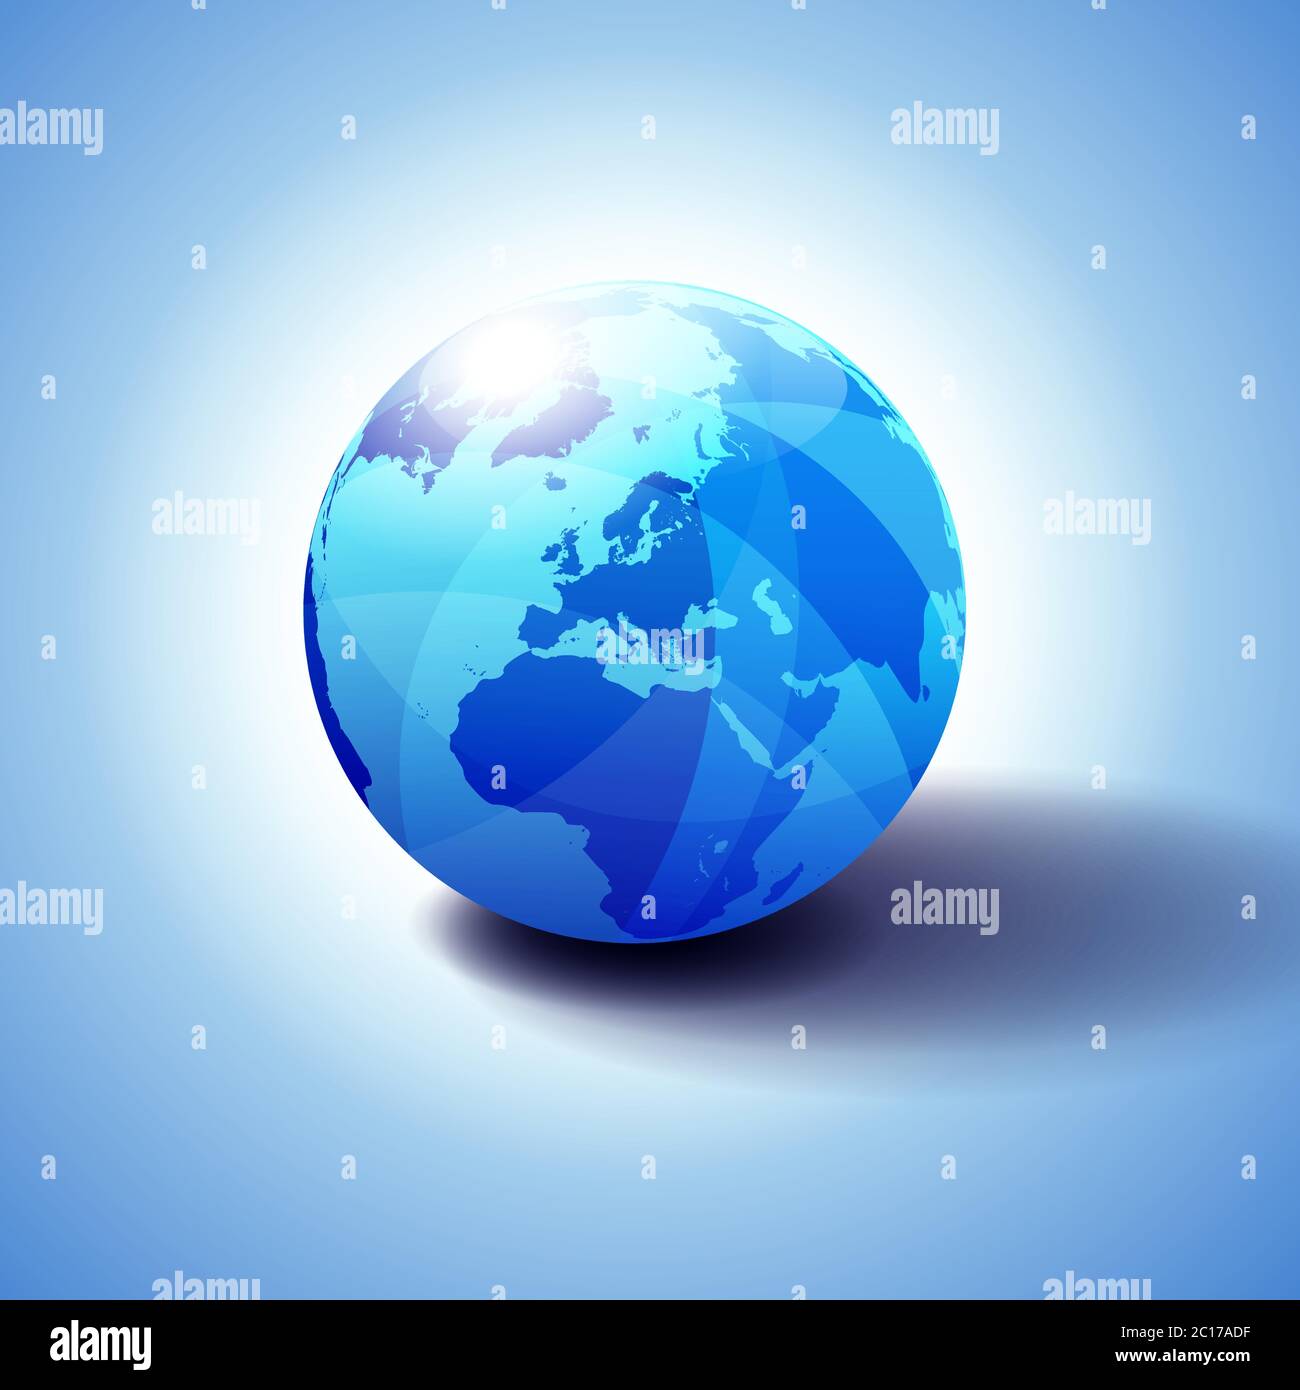 Europa, Naher Osten und Afrika Hintergrund mit Globe Icon 3D Illustration, glänzende Kugel mit Global Map in Subtle Blues. Stock Vektor